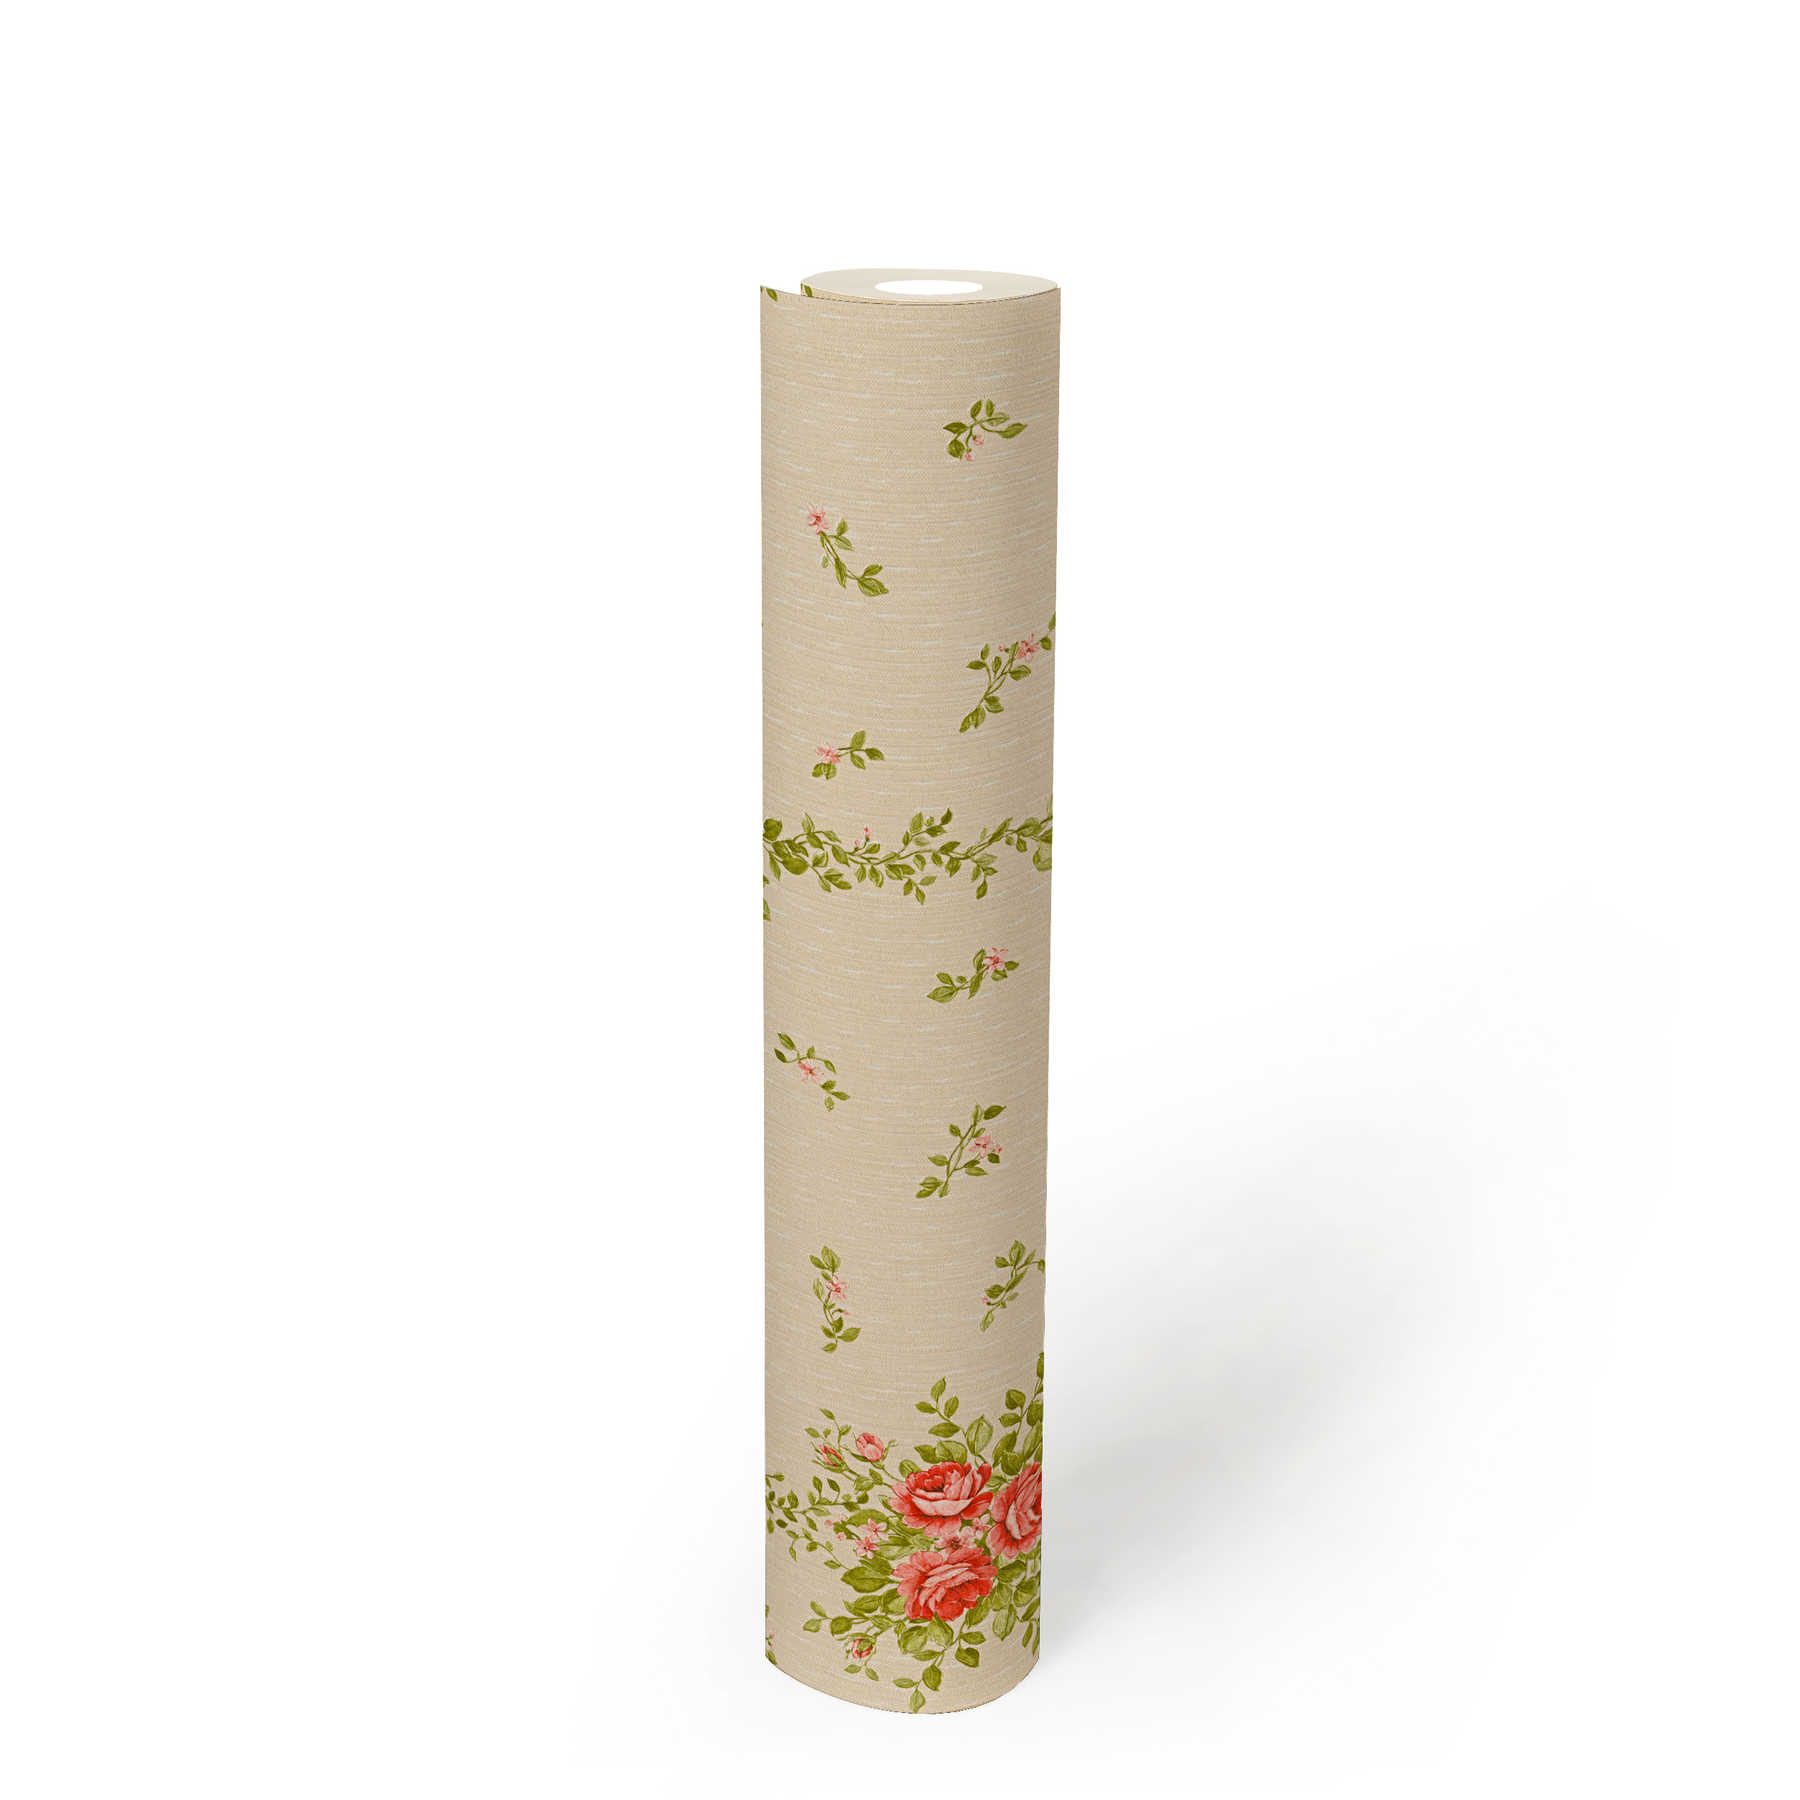             Blumentapete Rosen Muster & Streifen-Effekt – Beige
        